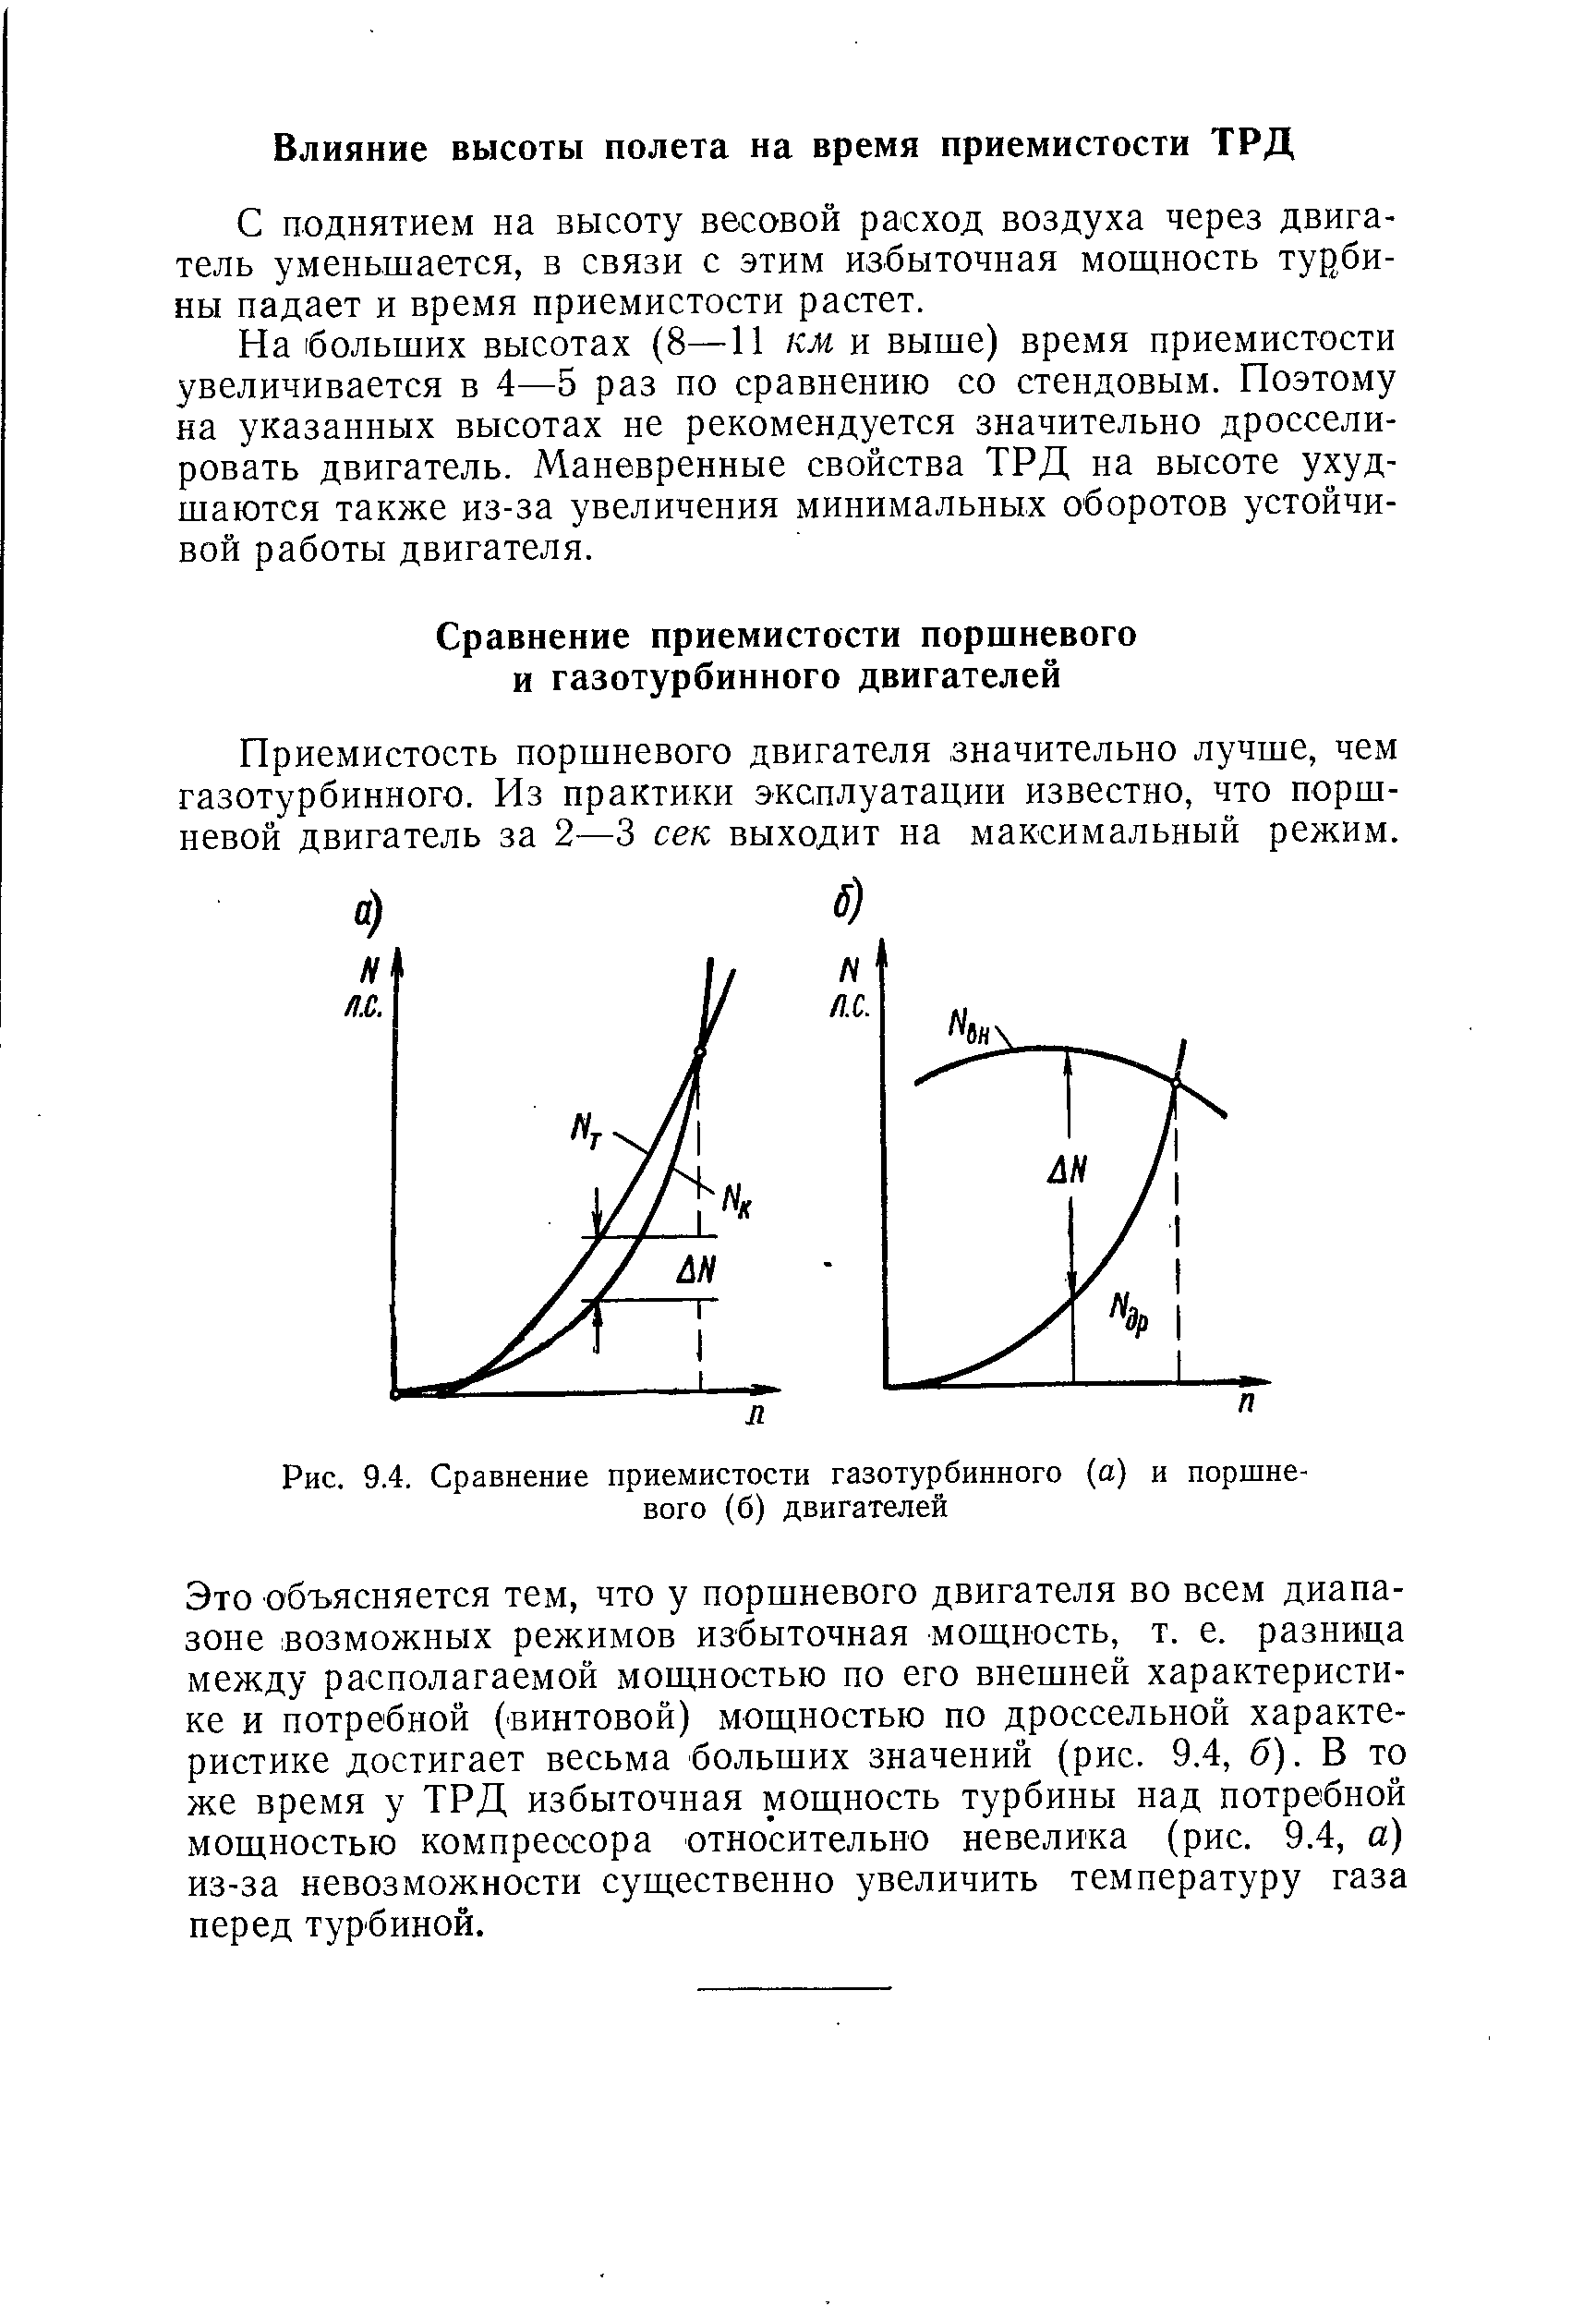 Рис. 9.4. Сравнение приемистости газотурбинного (а) и поршневого (б) двигателей
